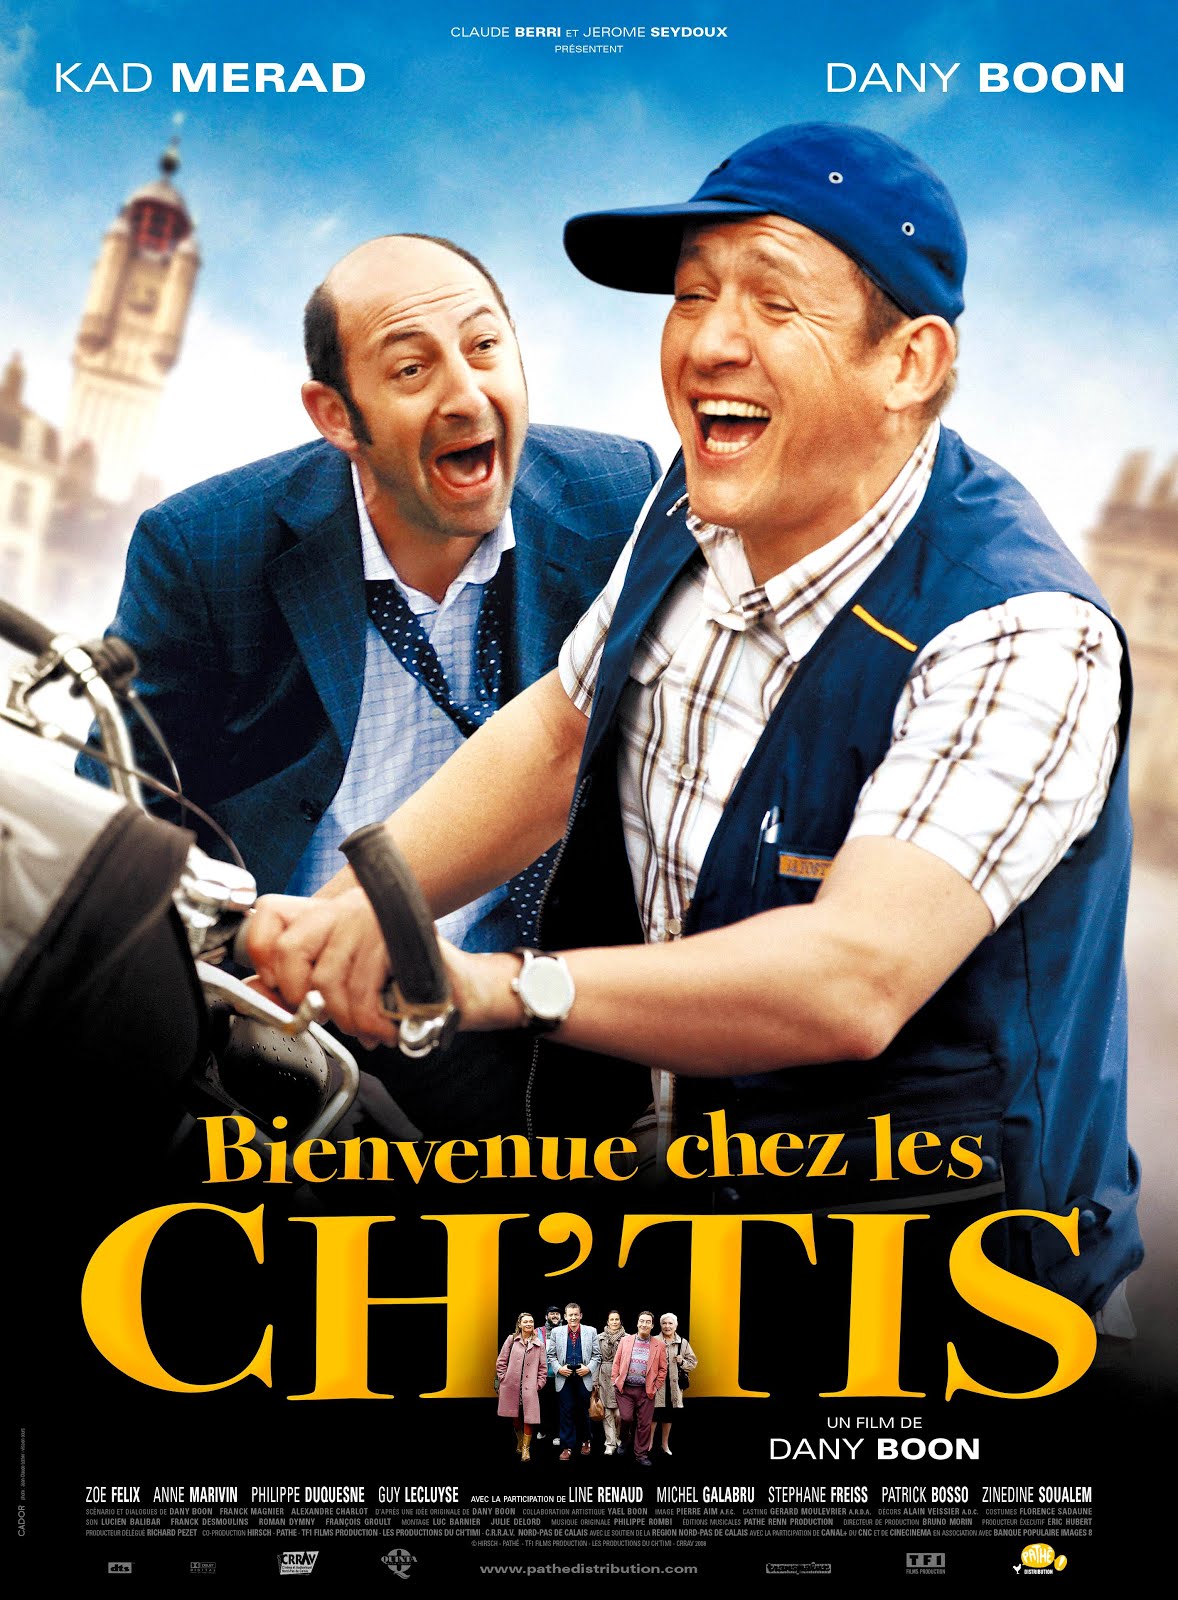 Bienvenue chez les Ch'tis (2007) Dany Boon - Bienvenue chez les Ch'tis